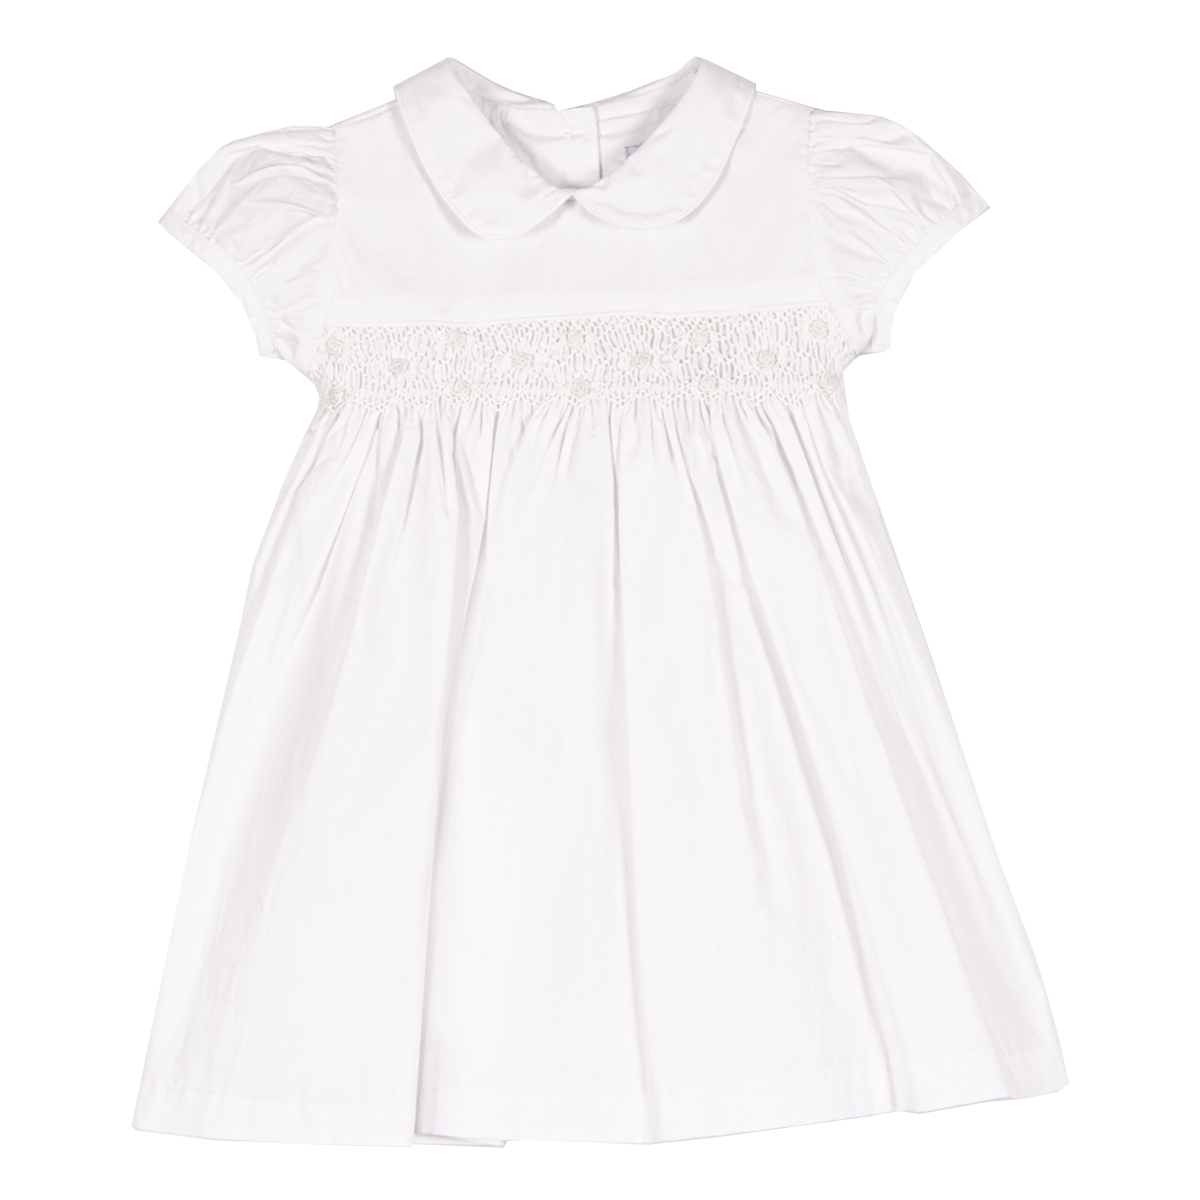 Siola Babies' Vestito Total-white Con Ricami In Bianco